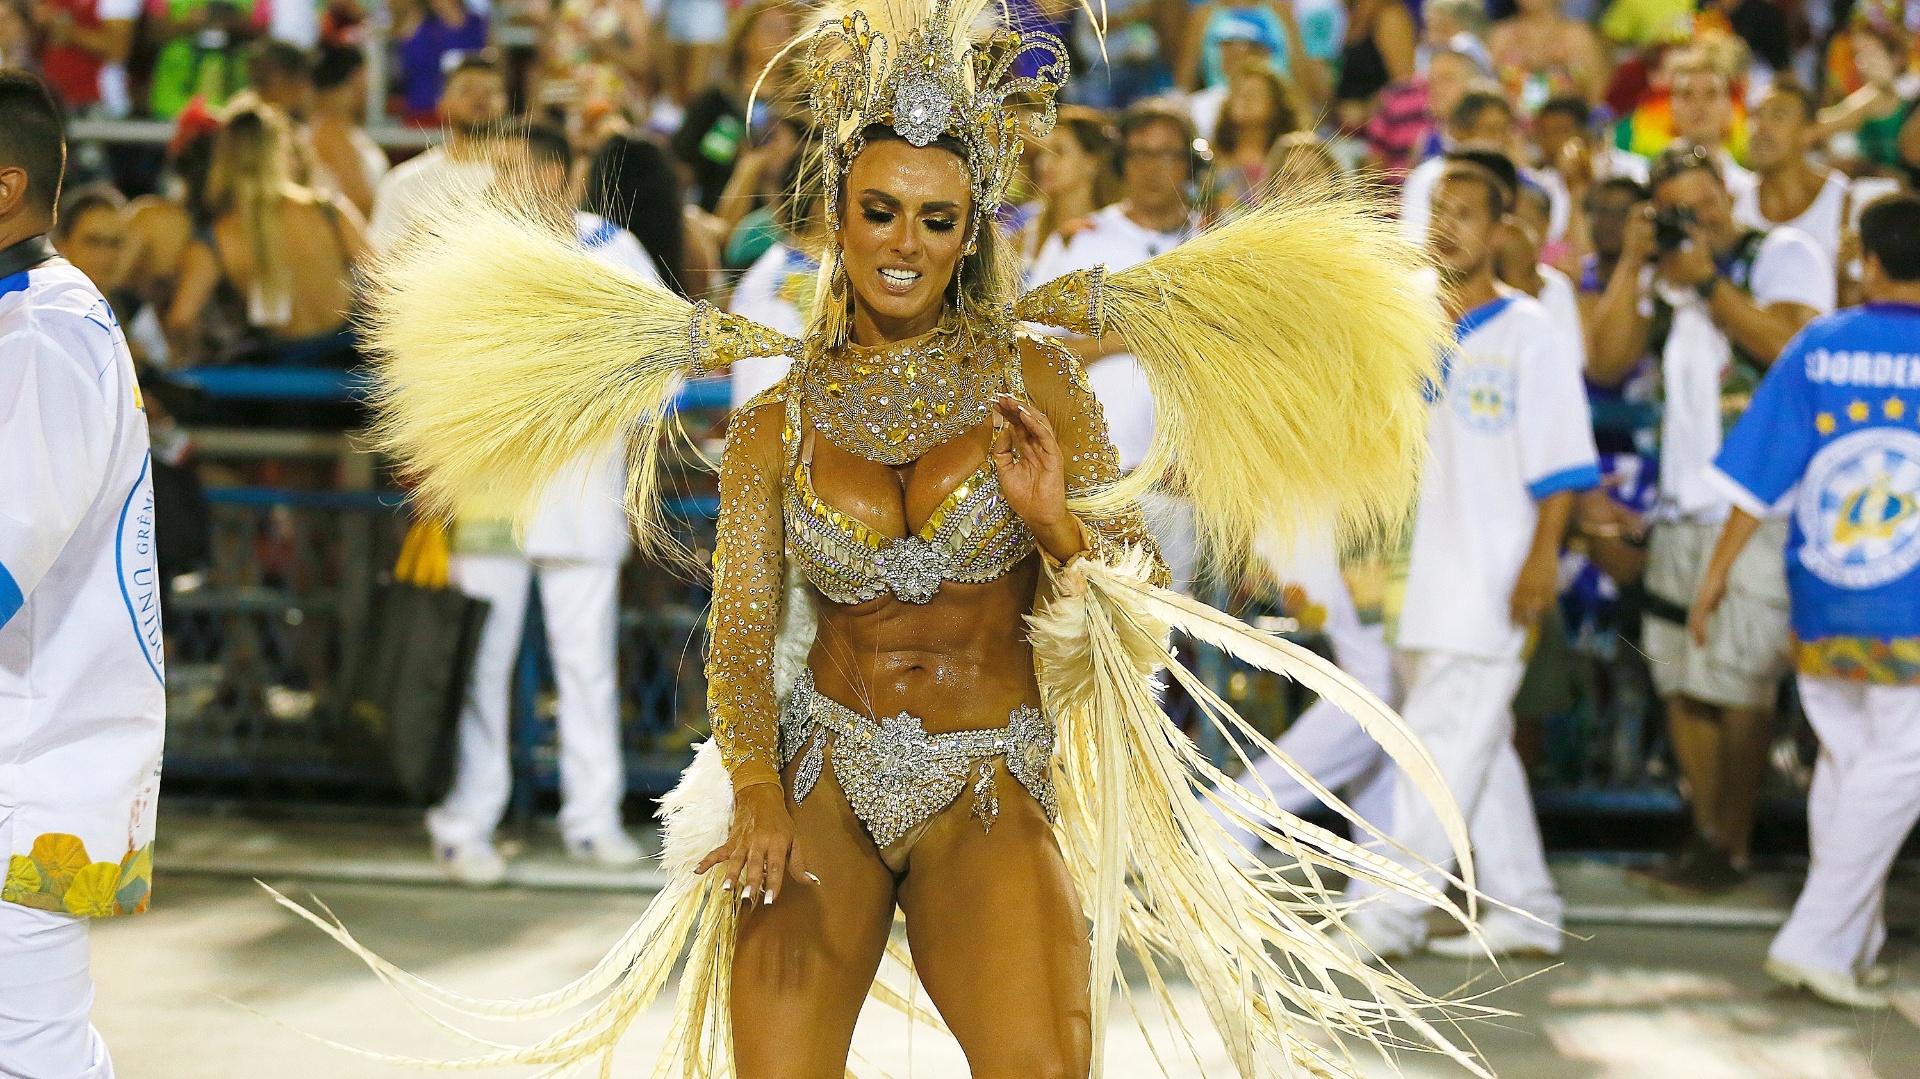 8.fev.2016 - Nicole Bahls é um dos destaques de chão da escola de samba Vila Isabel